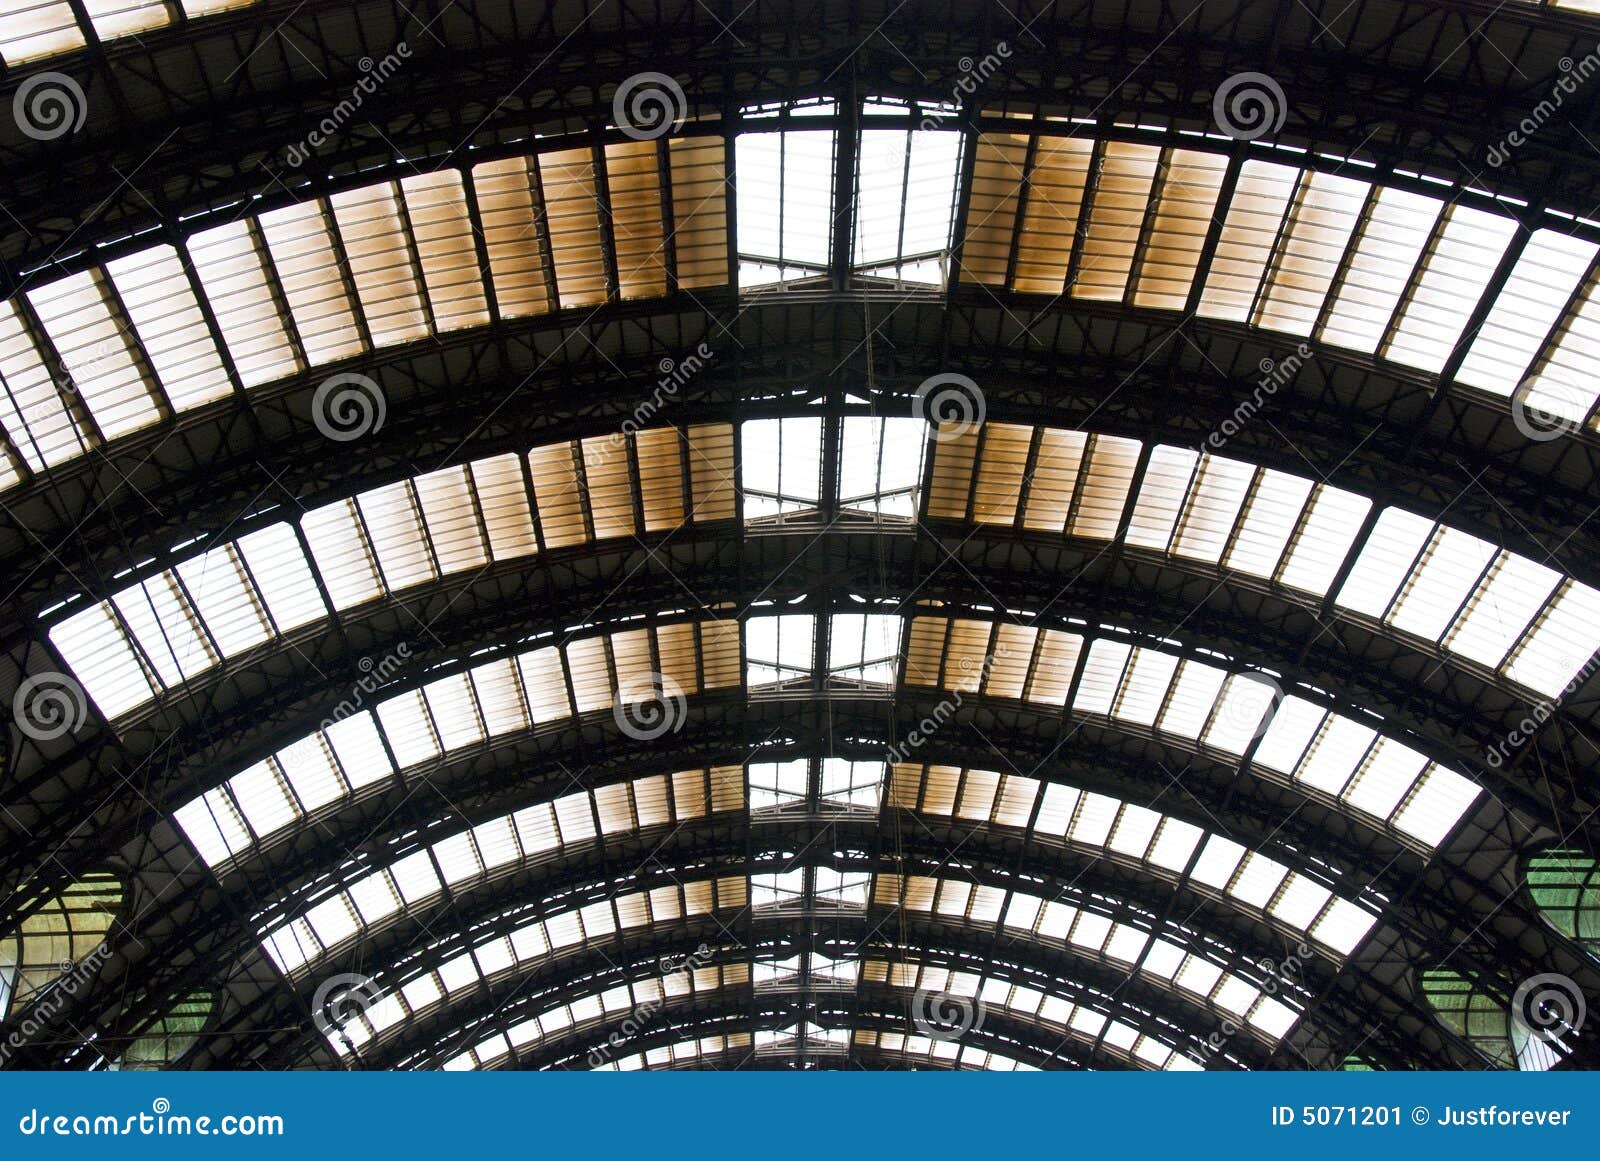 Stazione di Milano. La stazione ferroviaria centrale di Milano - l'Italia - copra il particolare